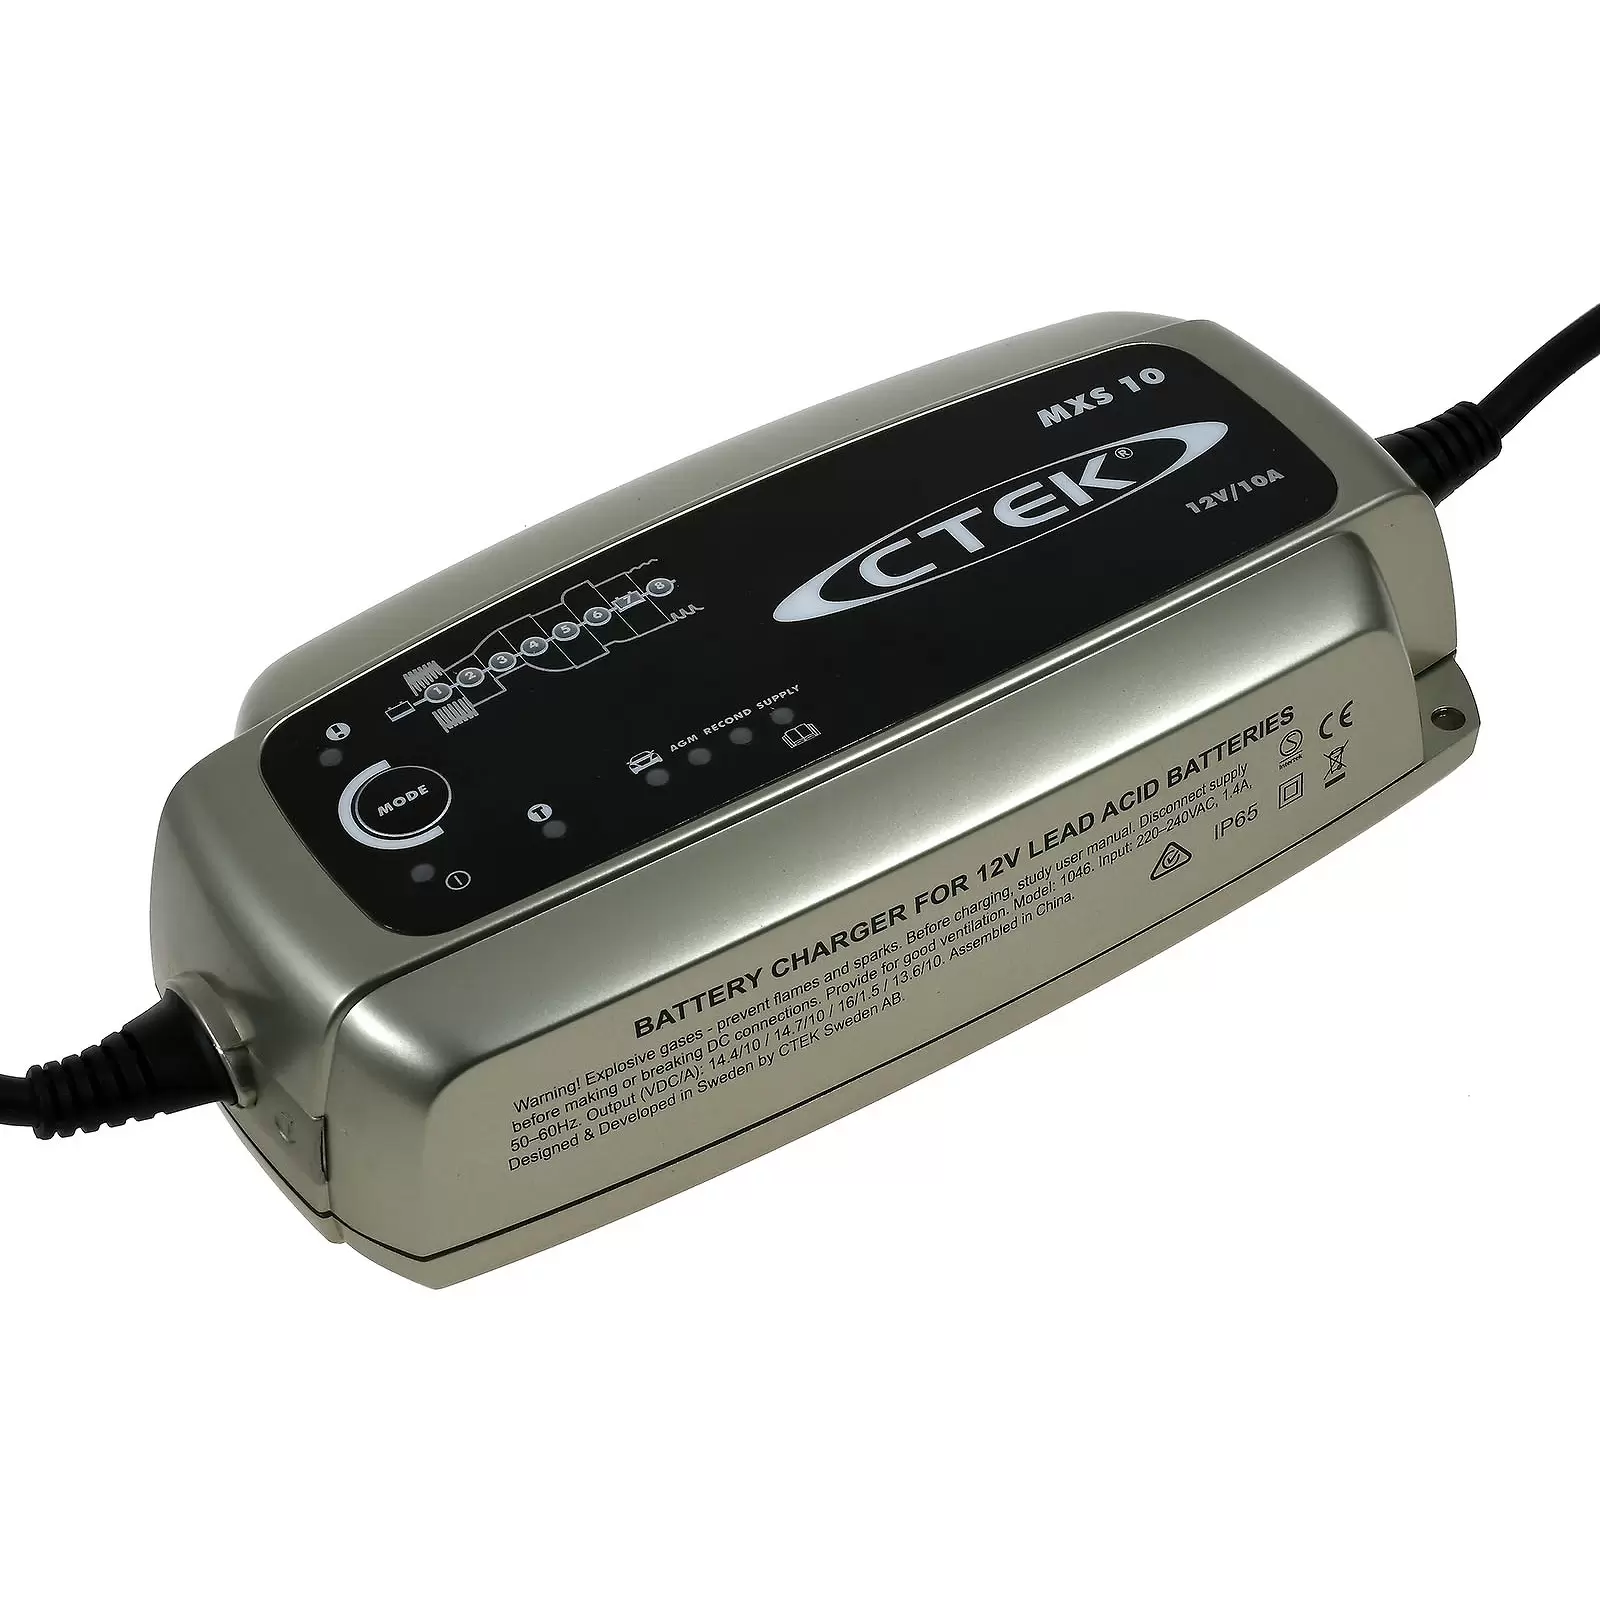 CTEK MXS 10 Batterie-Ladegerät, vollautomatisch u.a. für Auto, Caravan,  Boot 12V 10A EU